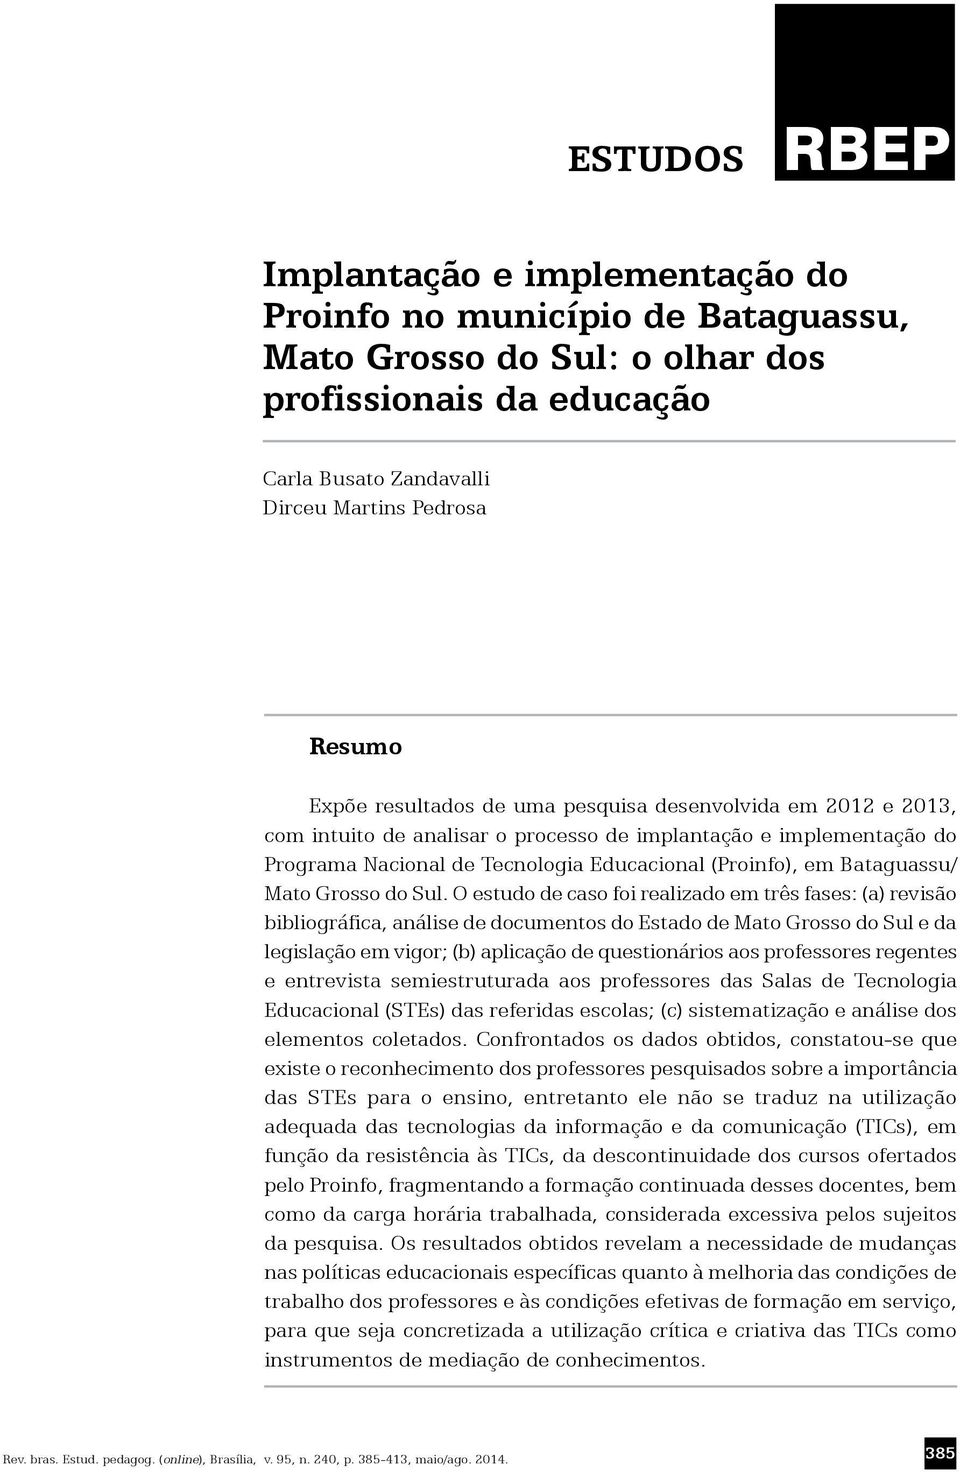 O estudo de caso foi realizado em três fases: (a) revisão bibliográfica, análise de documentos do Estado de Mato Grosso do Sul e da legislação em vigor; (b) aplicação de questionários aos professores